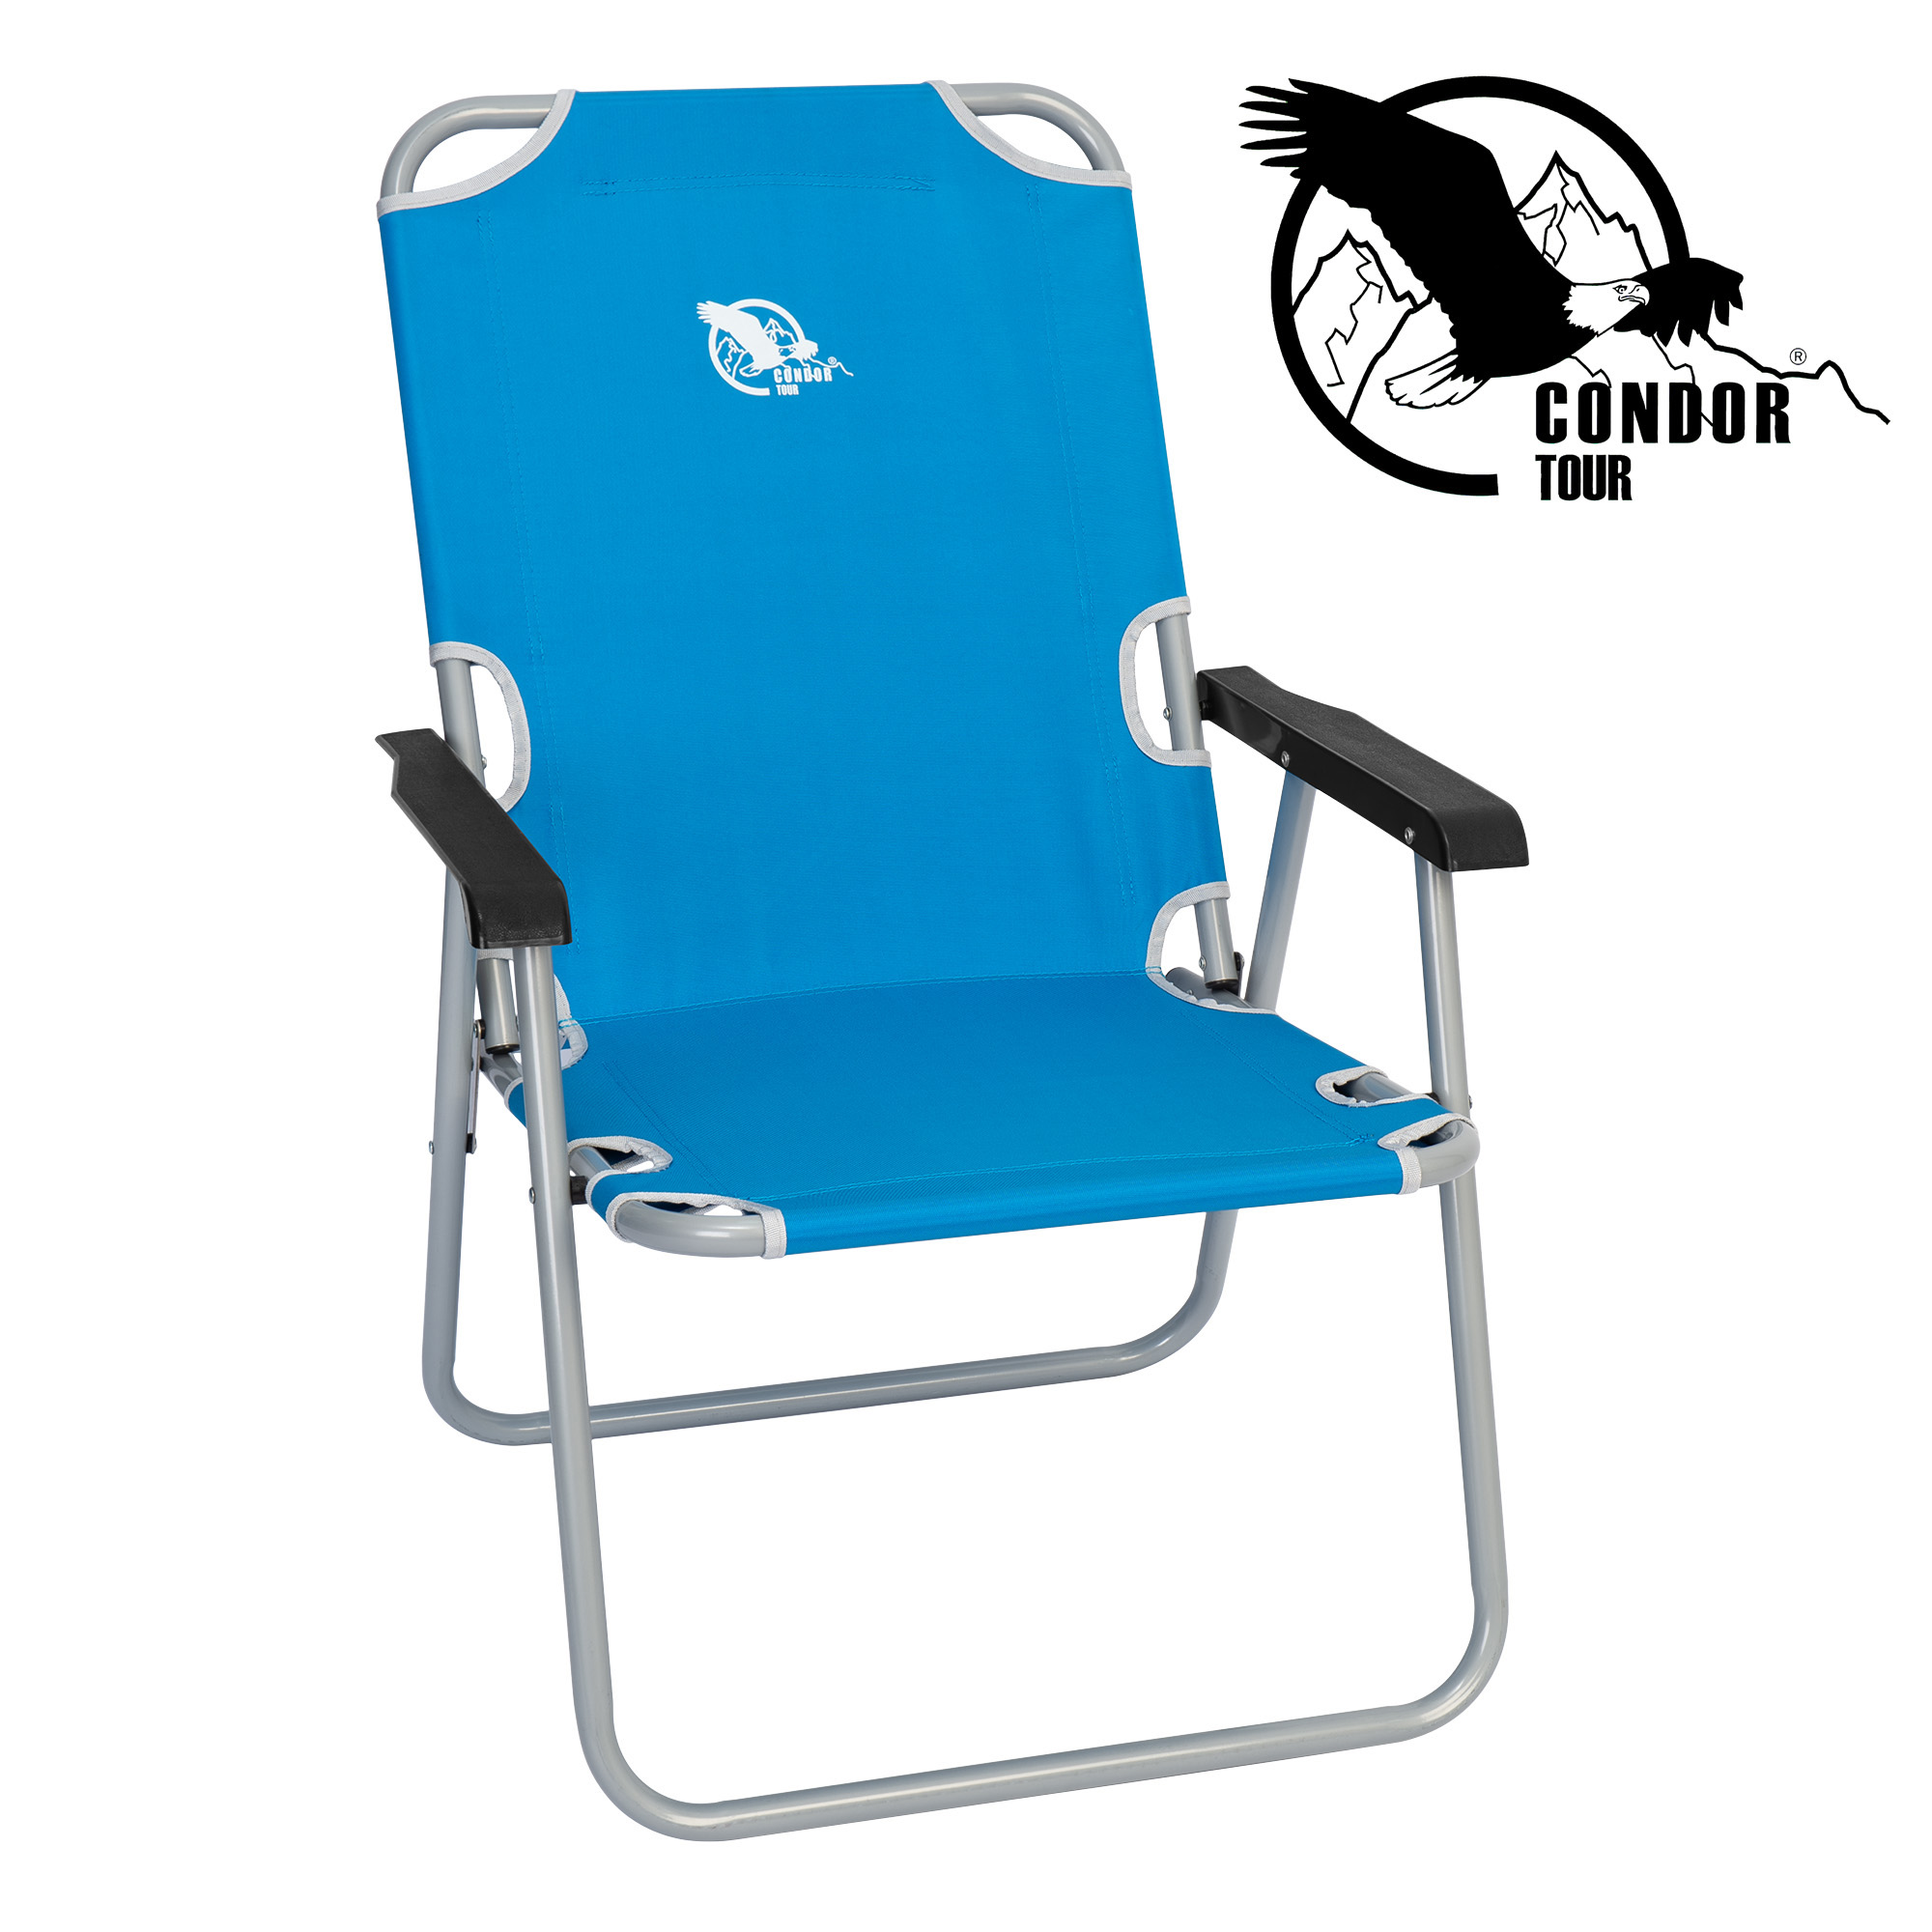 Кресло  раскладное "Condor" 54х62х40/85 см, вес 4,8 кг, цвет голубой, максимальная нагрузка 130 кг